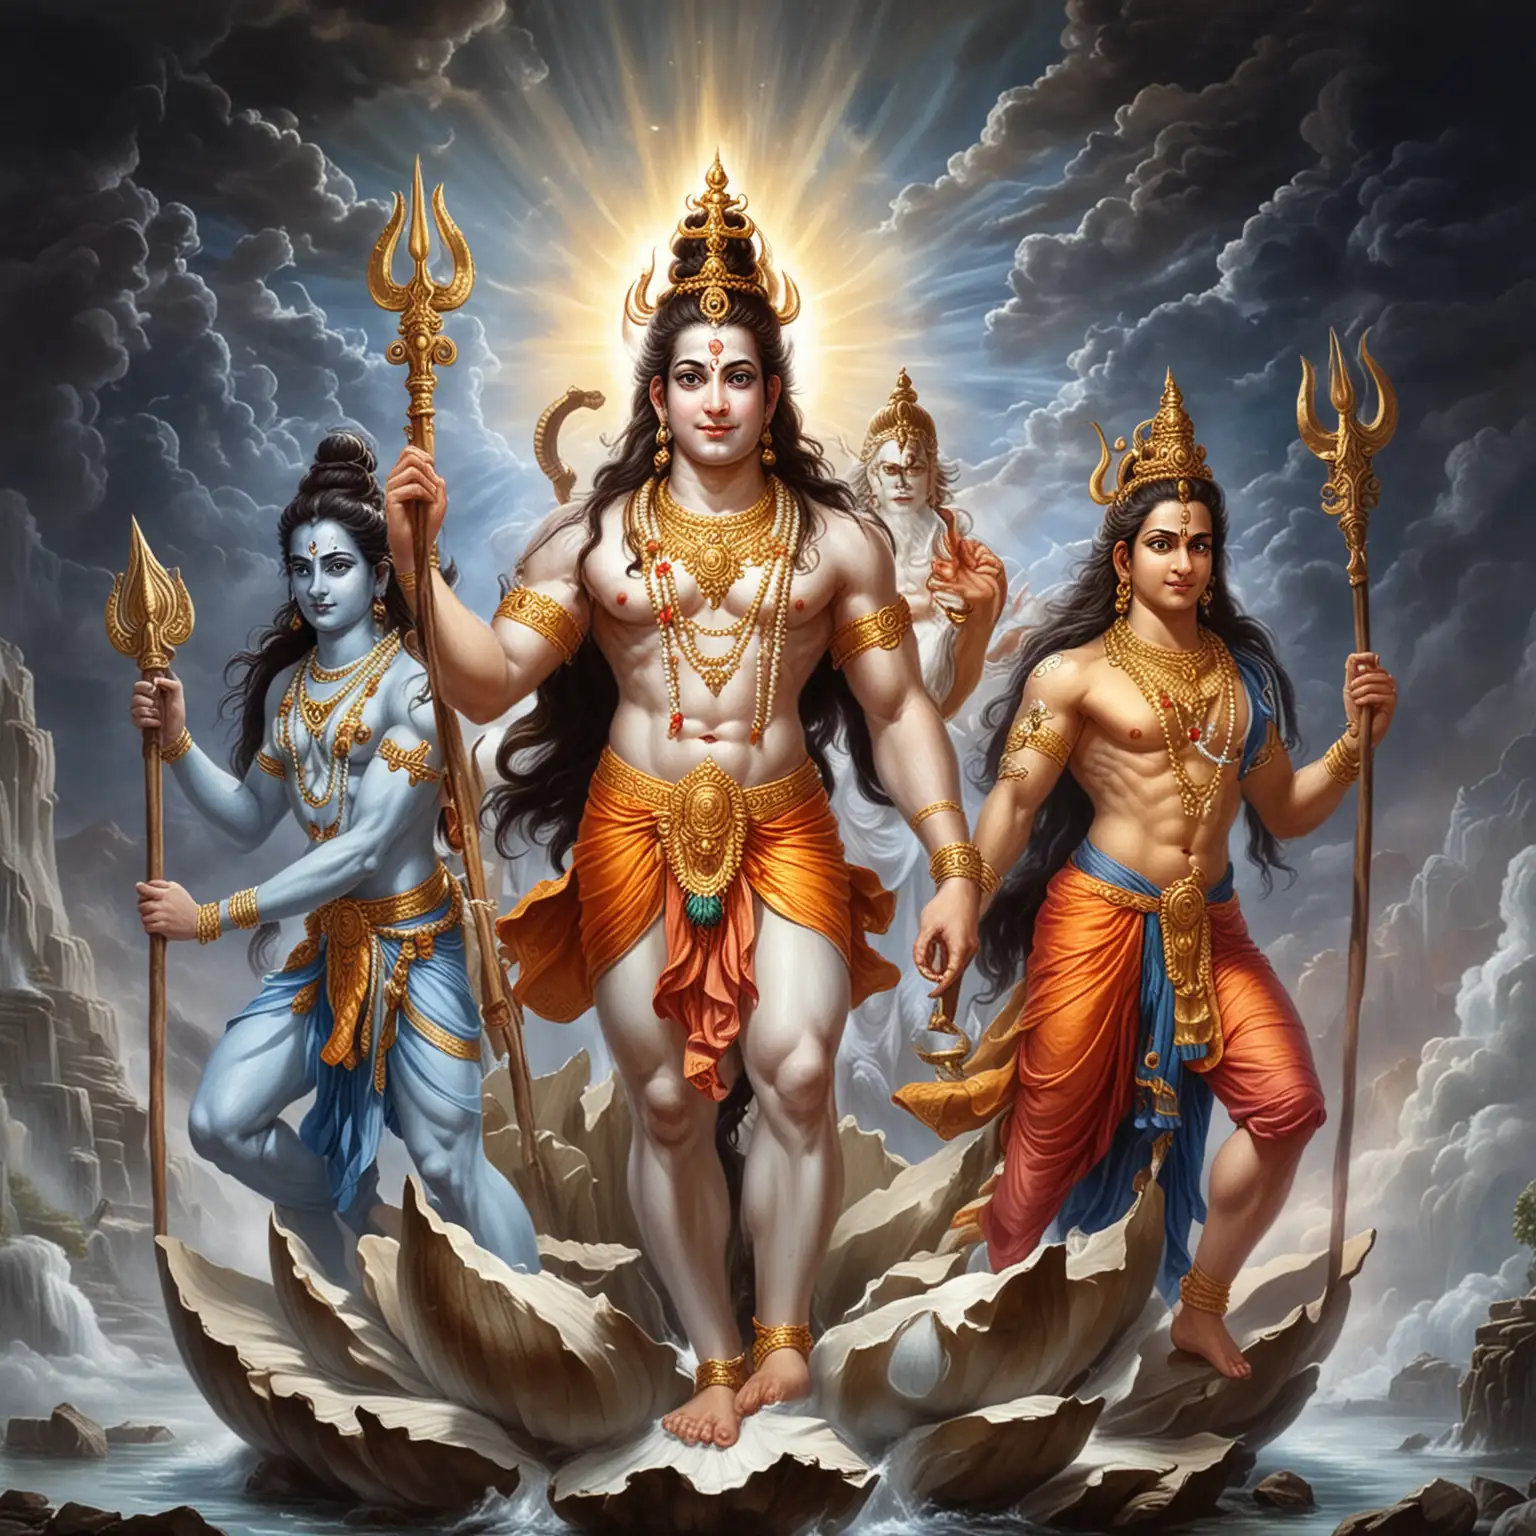 印度教三大主神为创造神梵天、破坏神湿婆、保护神毗湿奴